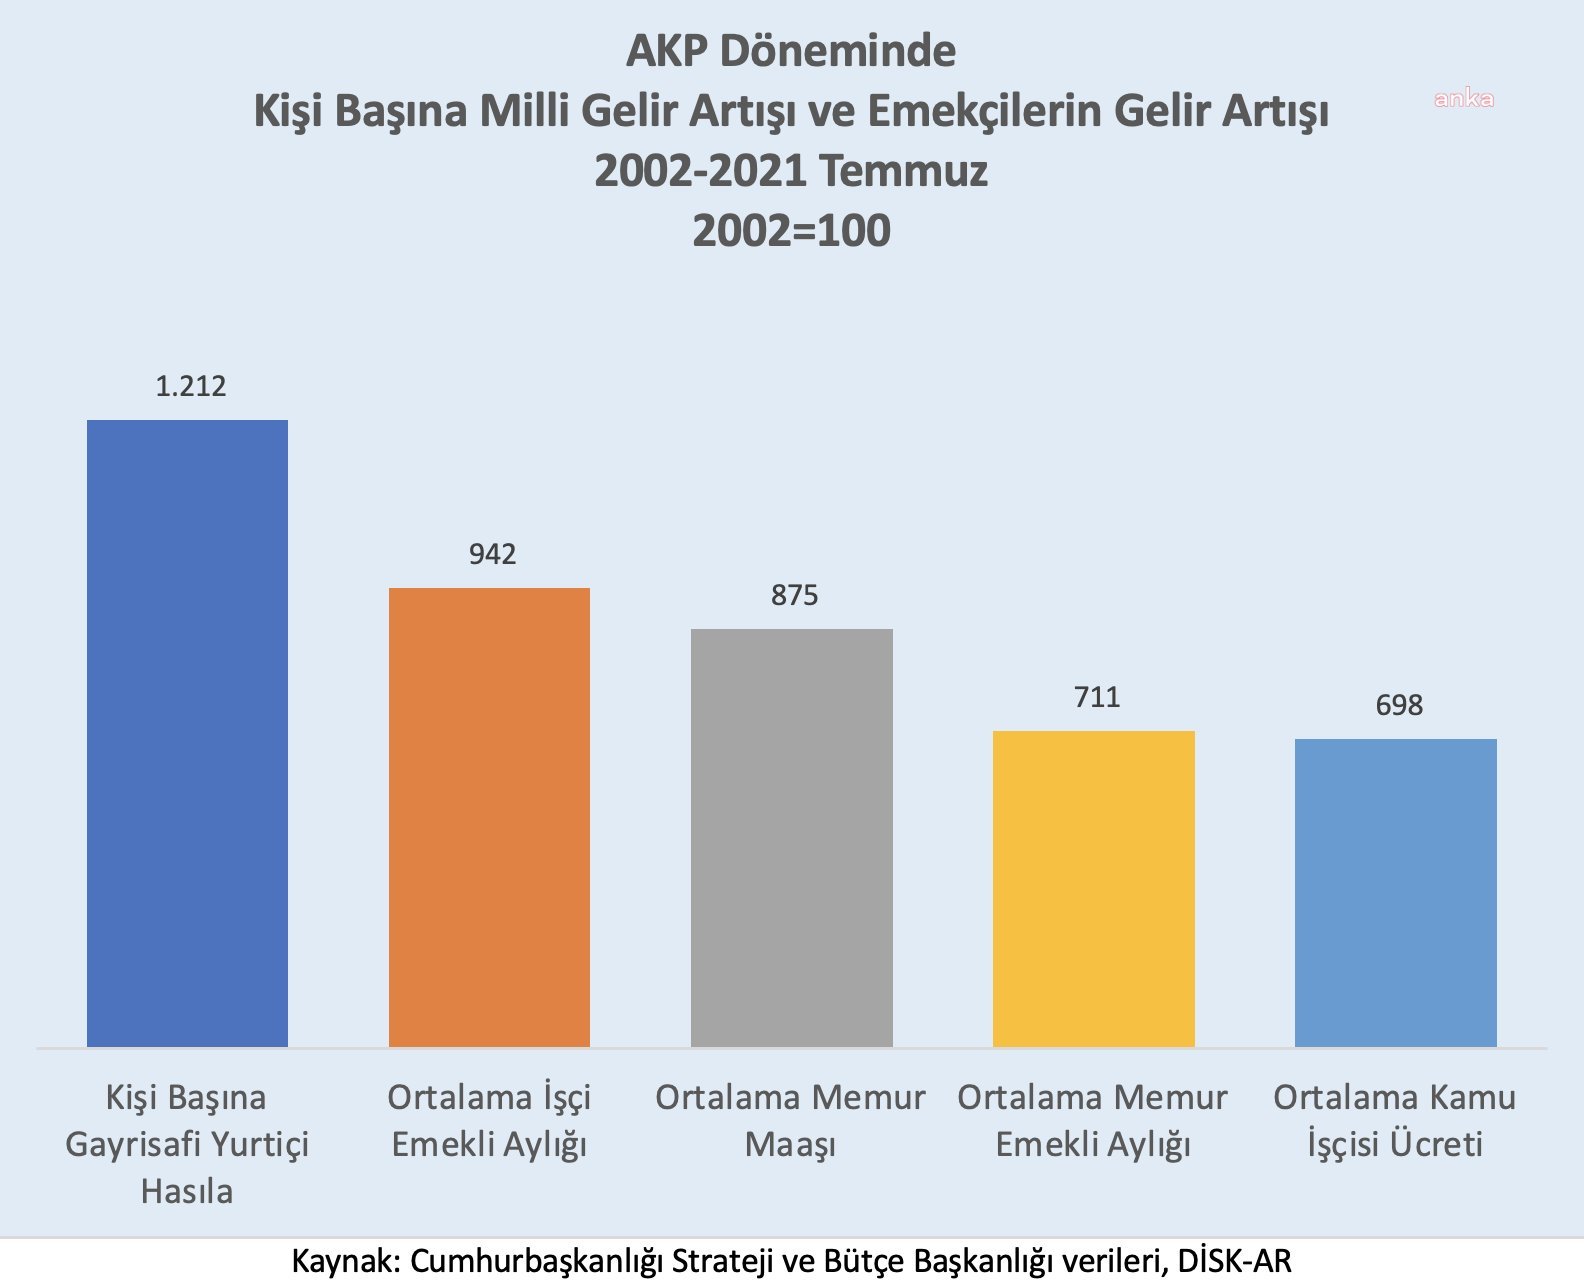 DİSK-AR'dan "27 kat artan emekli maaşları var" diyen Erdoğan'a yanıt: "AKP’li yıllarda ortalama emekli aylığı 9,4 kat arttı"